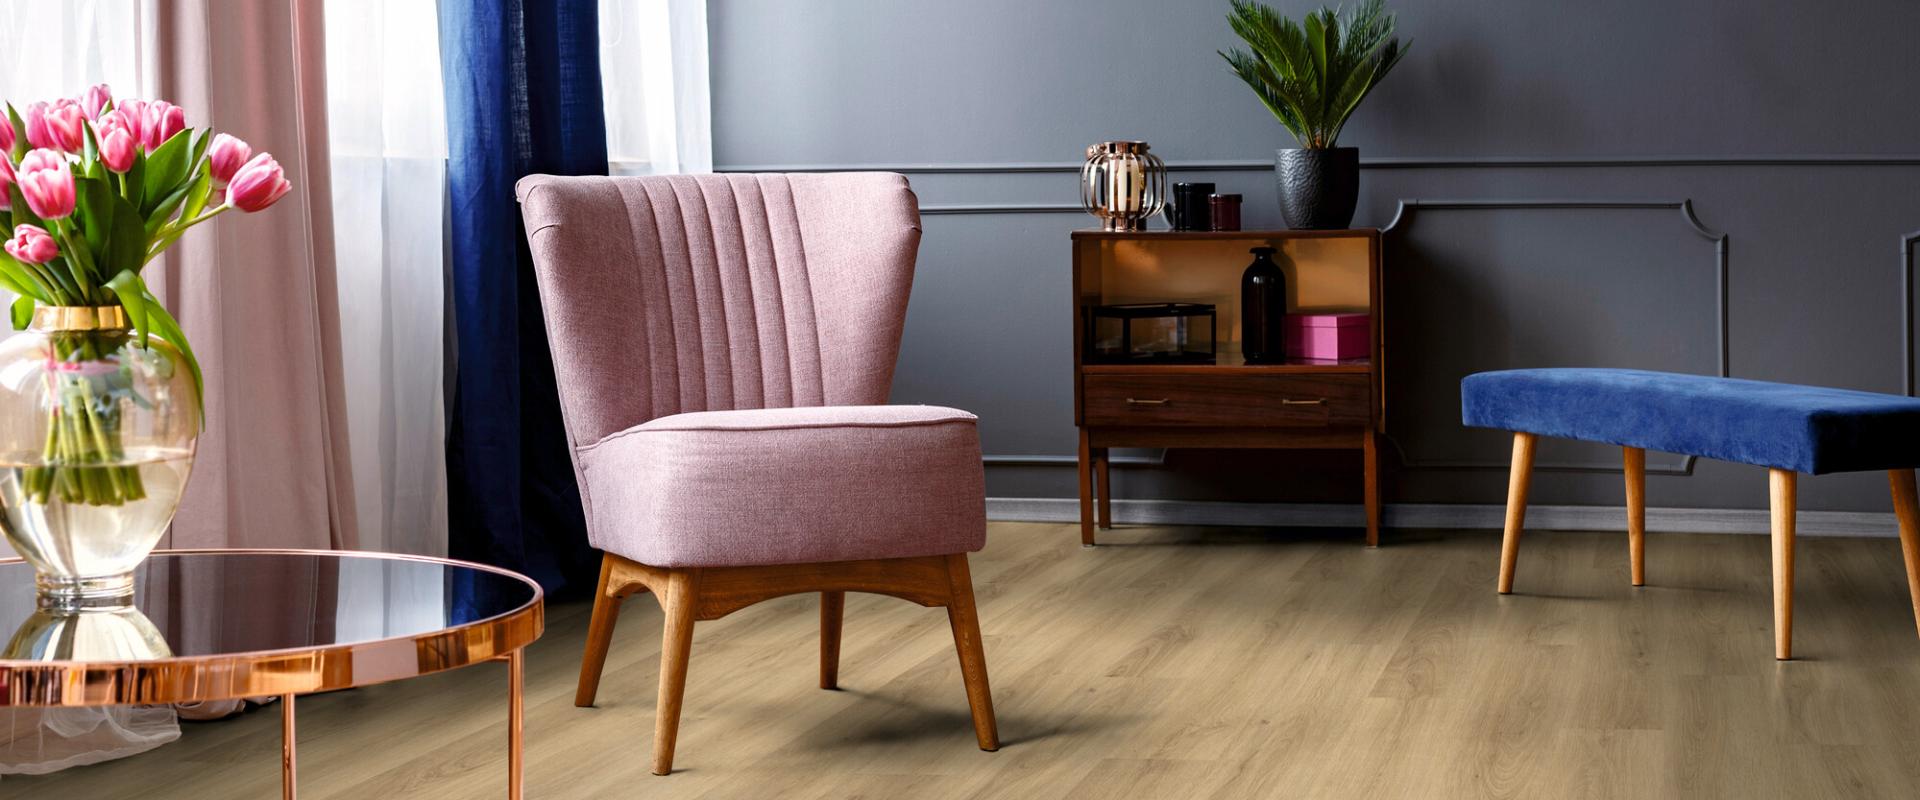 Ein Wohnzimmer mit Holzböden und einem rosa Stuhl, aufgewertet durch professionelle Malerarbeiten. Thomas Jung Maler- & Stukkateurbetrieb aus Spiesen